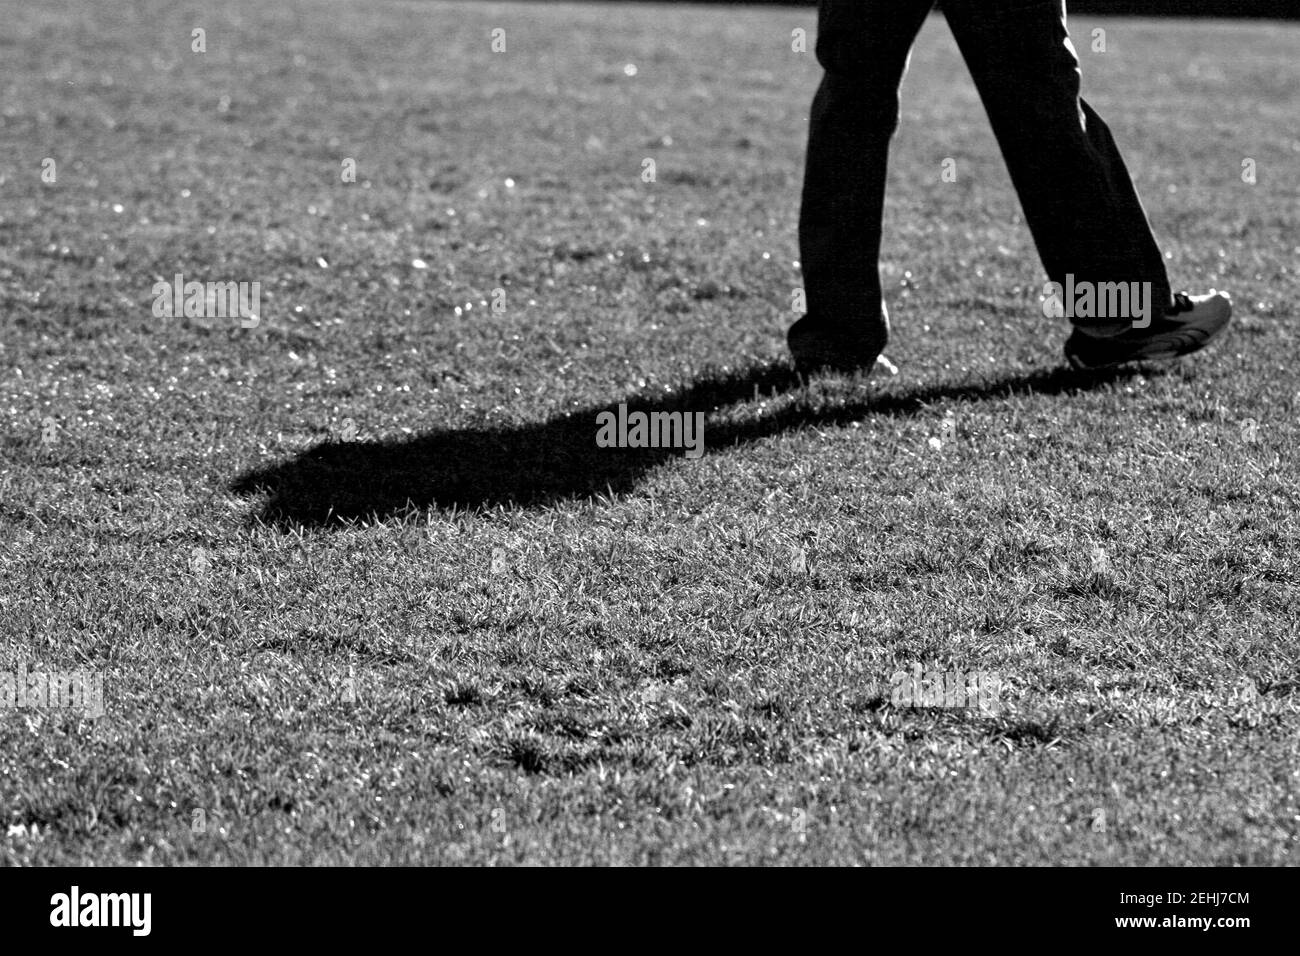 L'ombra dell'uomo sull'erba in scala di grigi Foto Stock